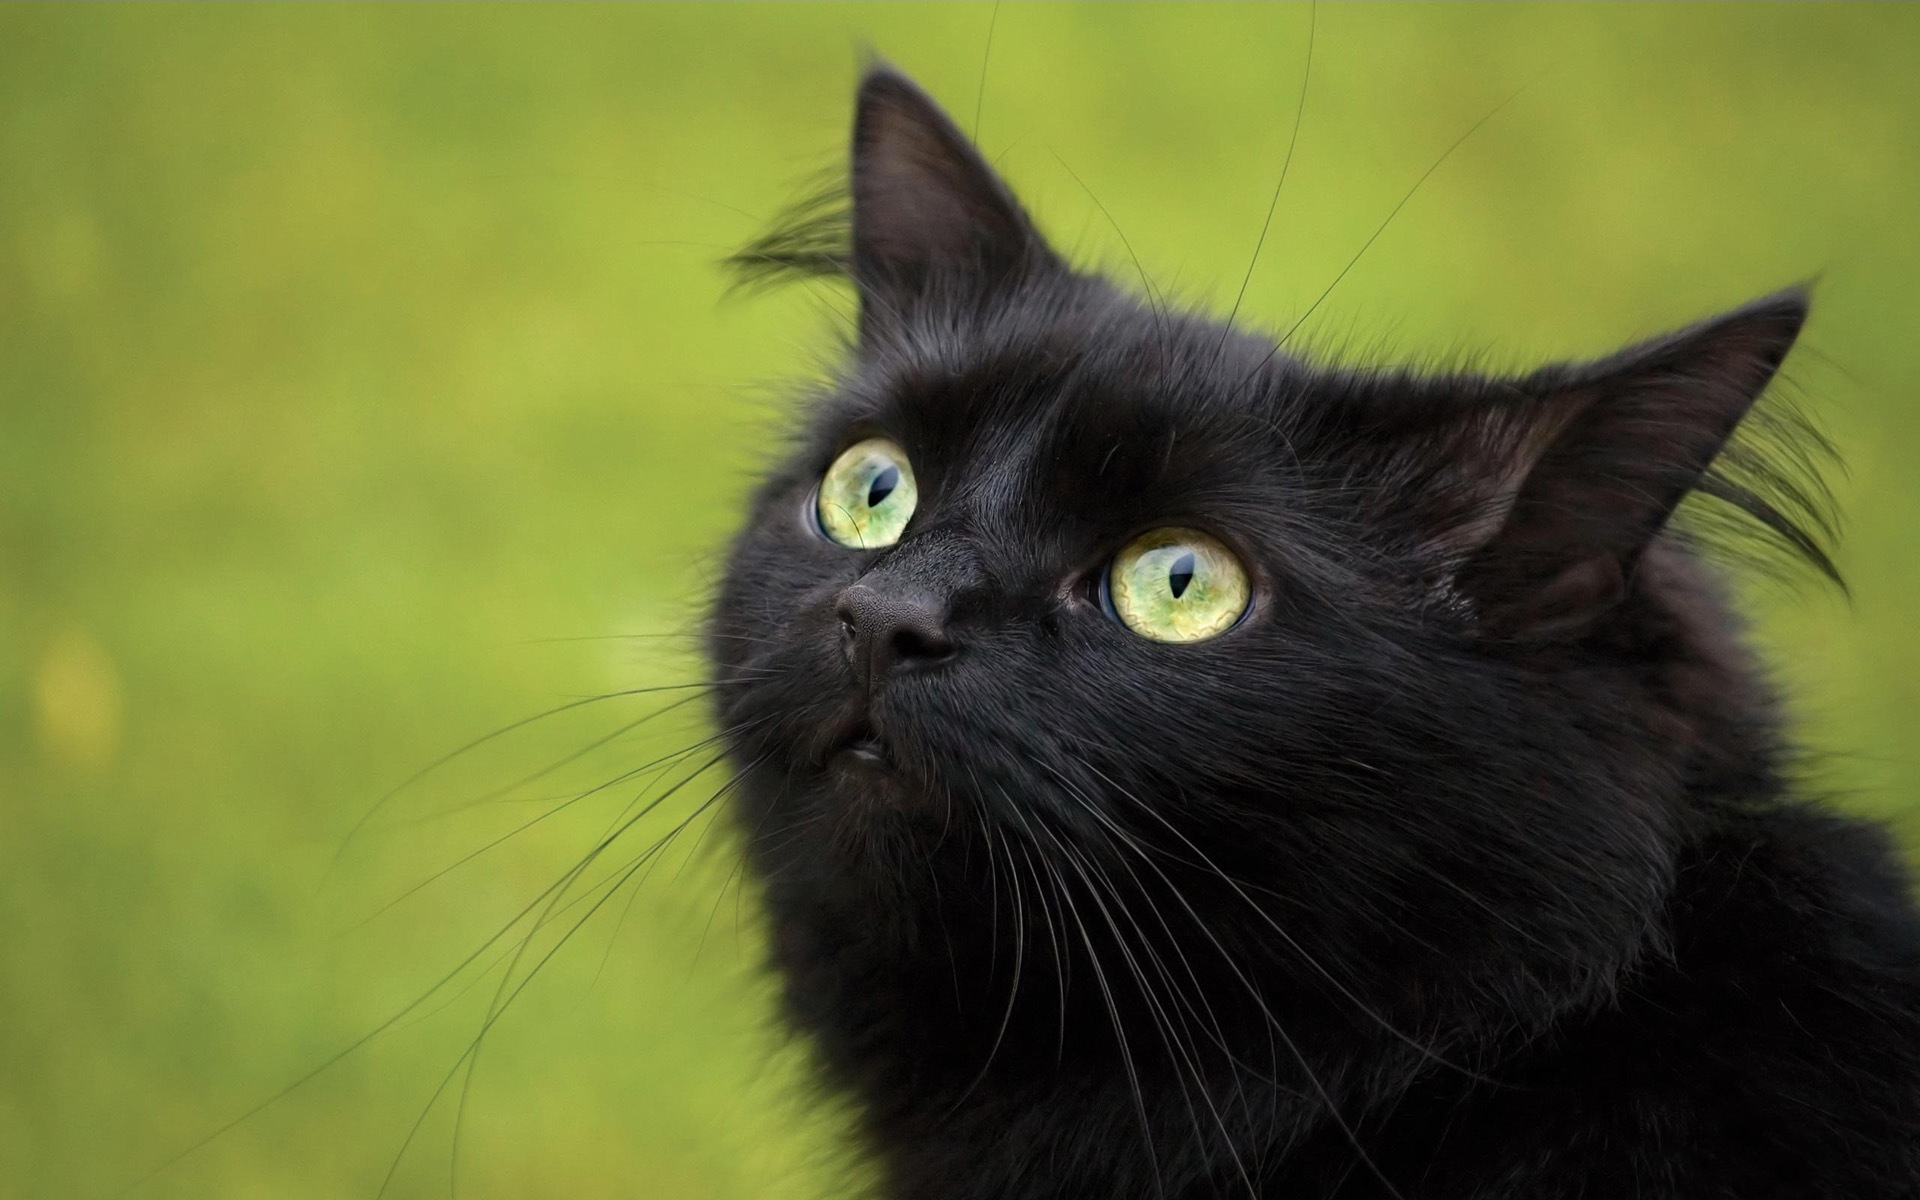 Black Cat Image